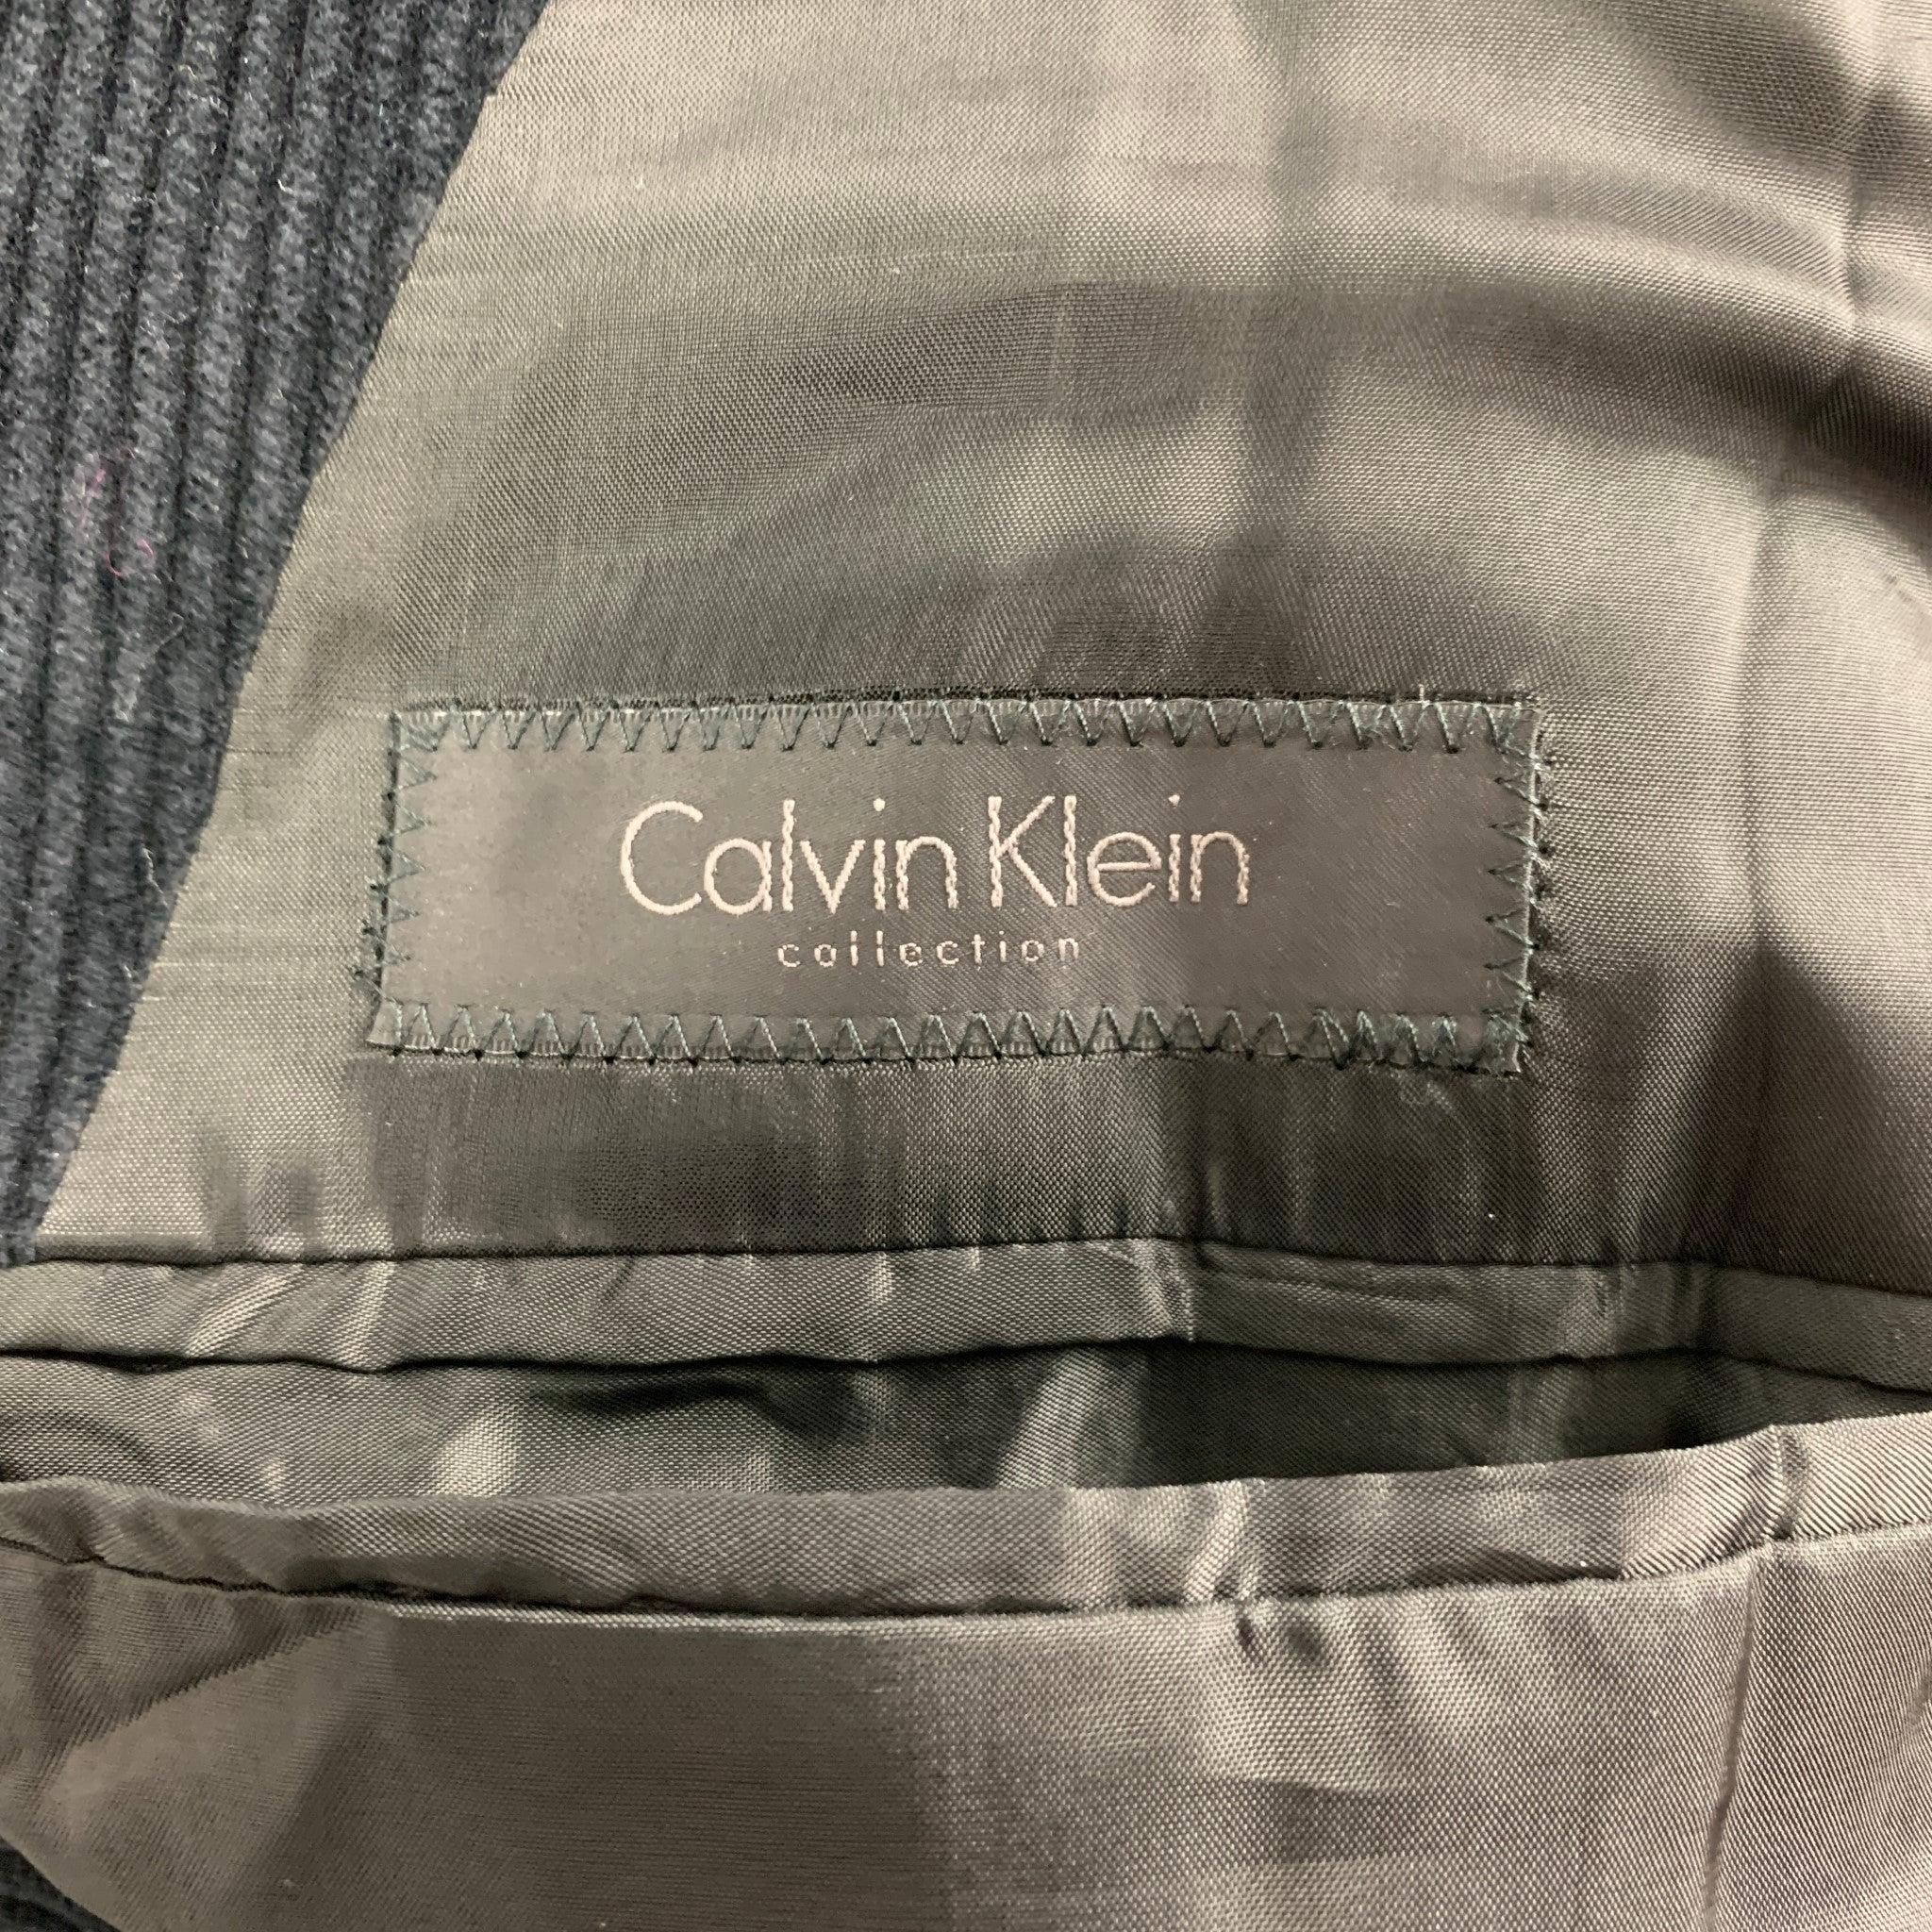 CALVIN KLEIN COLLECTION Size 44 Black Corduroy Cotton Sport Coat For Sale 3